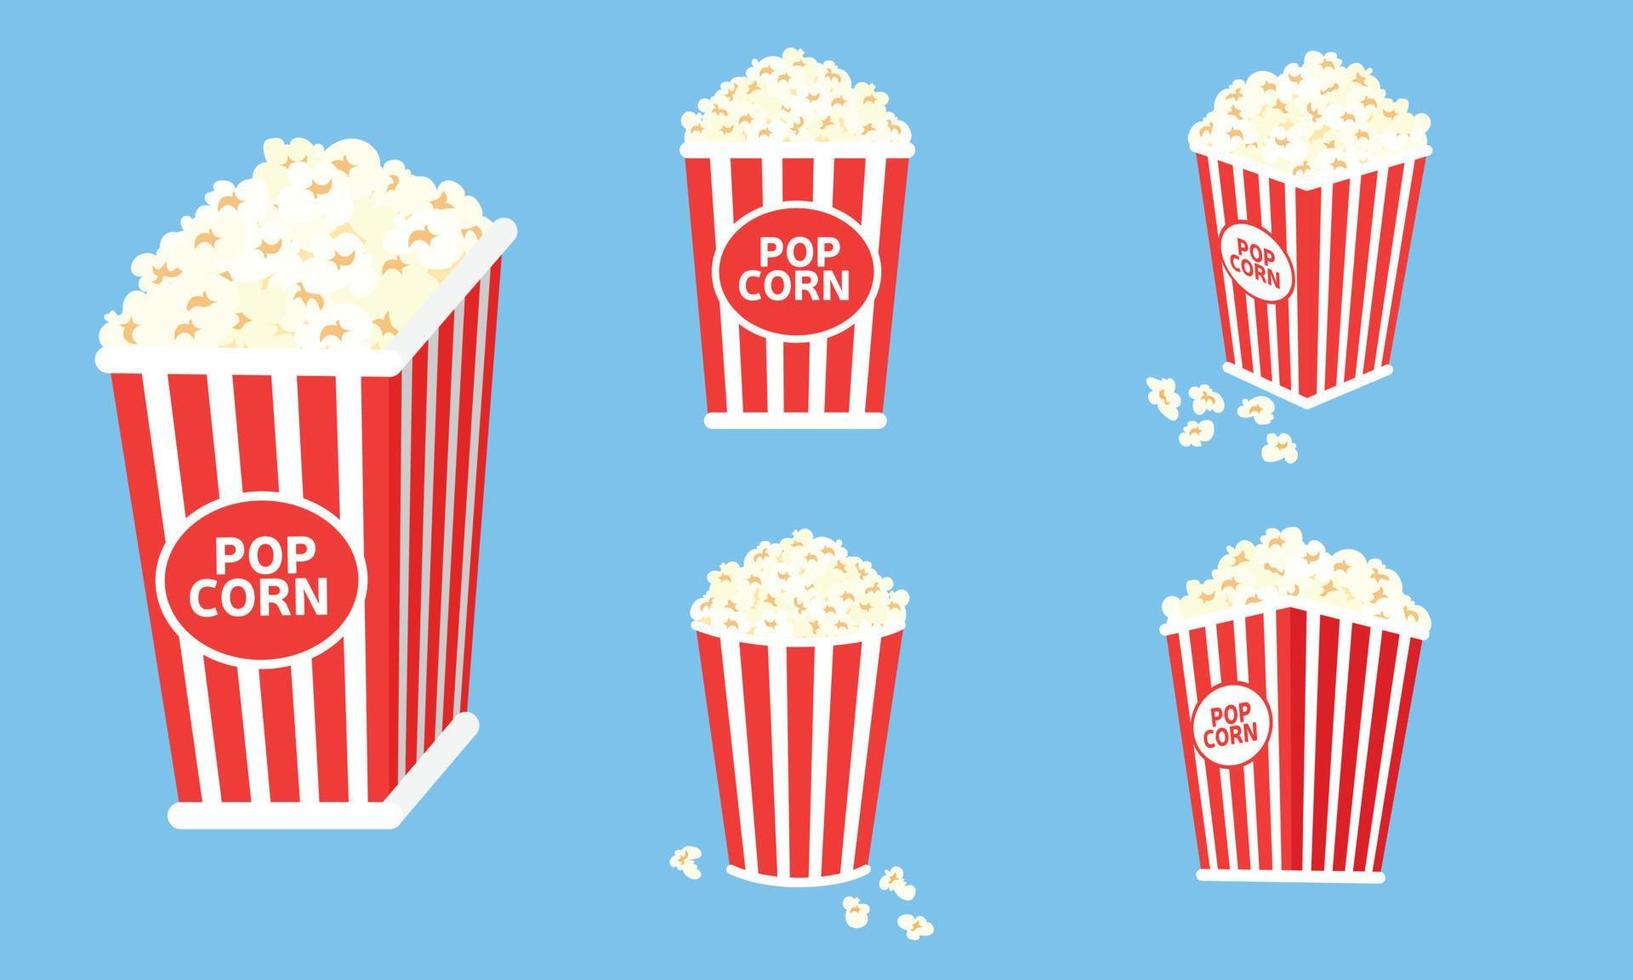 reeks van doos met popcorn. rood pak met popcorn voor bioscoop of film. vector illustratie.